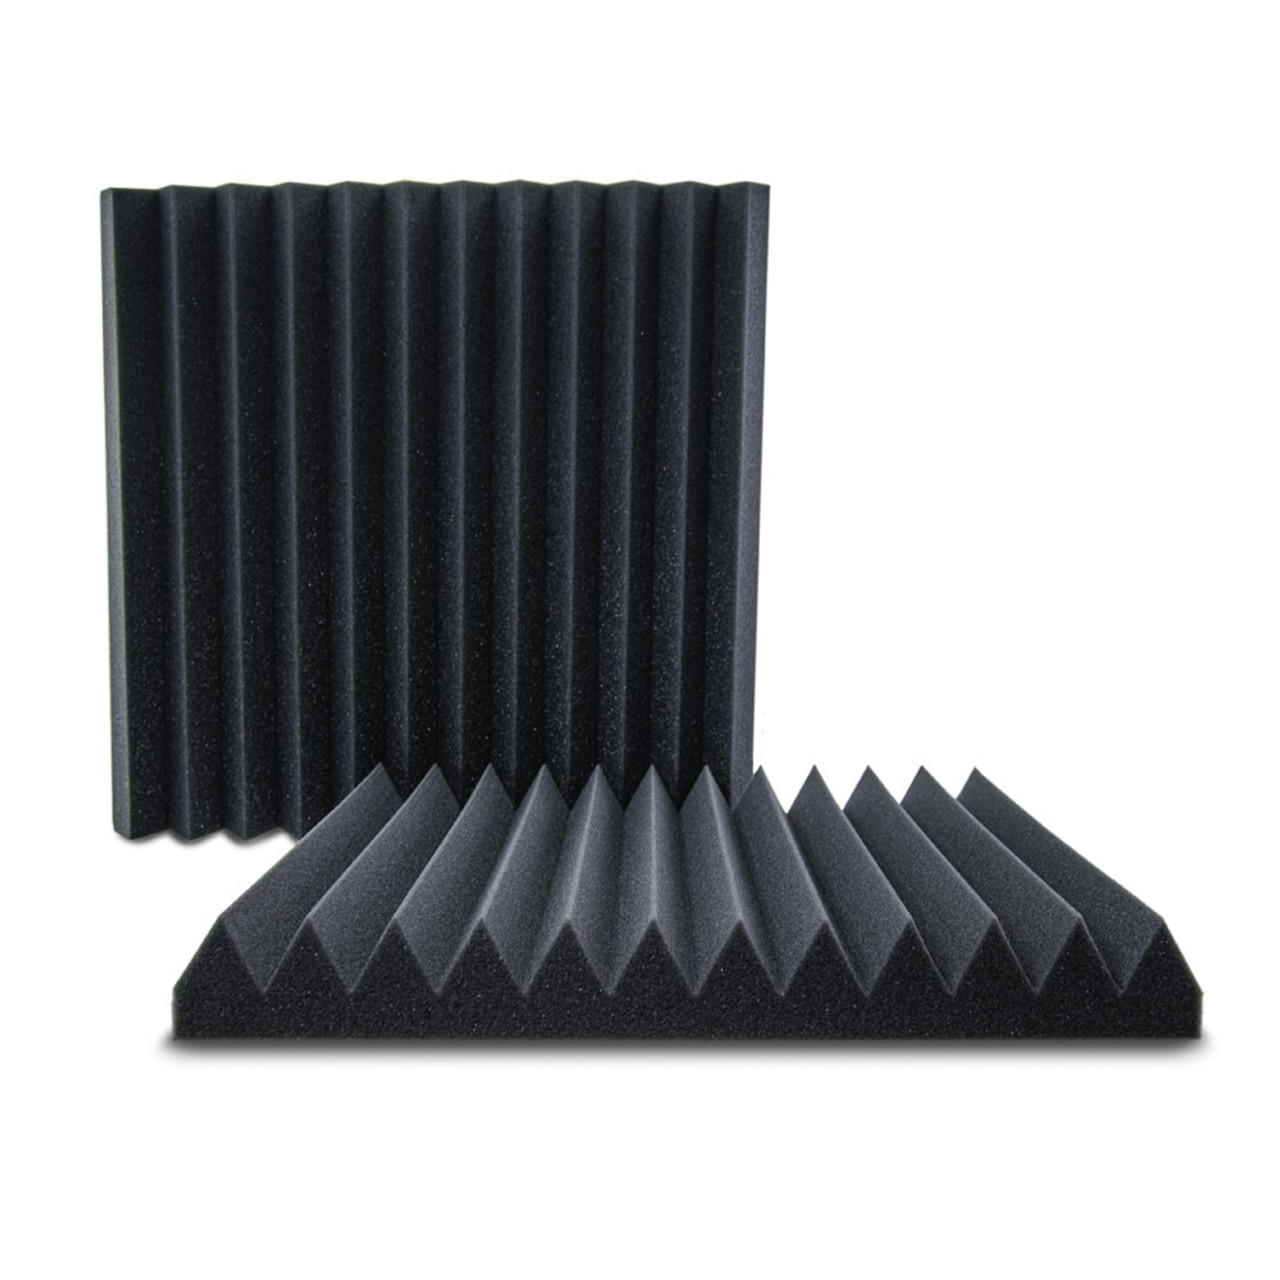 AVE ISOPEAK Acoustic Foam Panel Black - 10 Pack